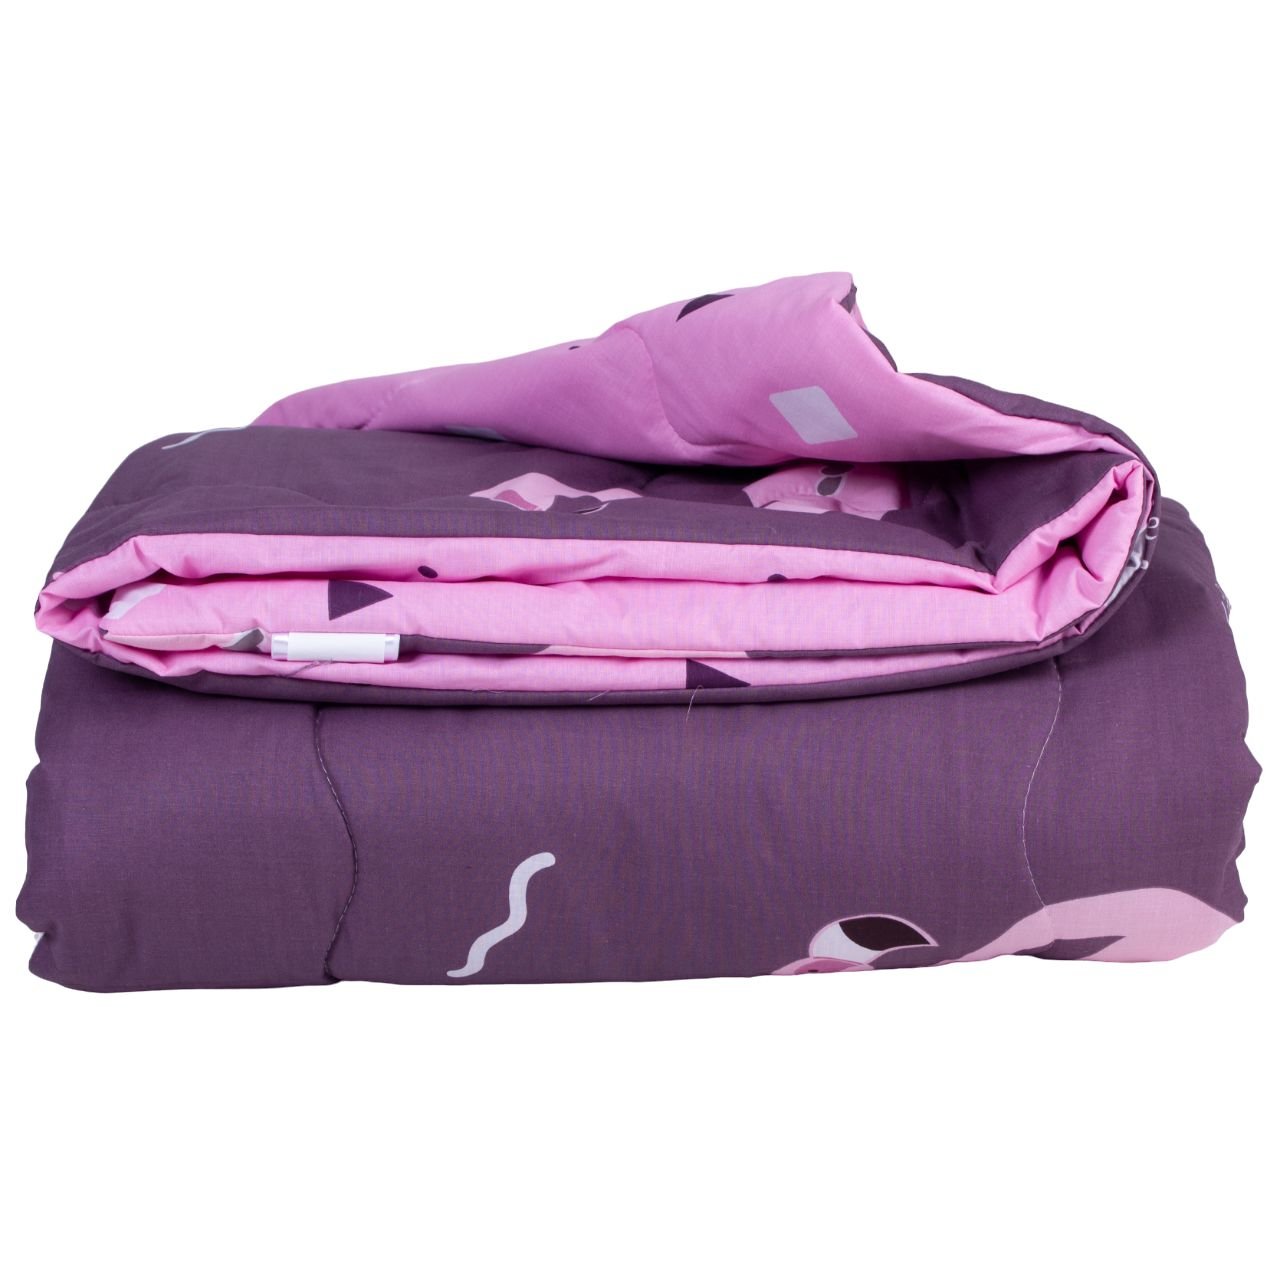 Одеяло хлопковое MirSon Деми №2820 Сolor Fun Line Nice, полуторное, 205х140 см, фиолетовое (2200006700241) - фото 2